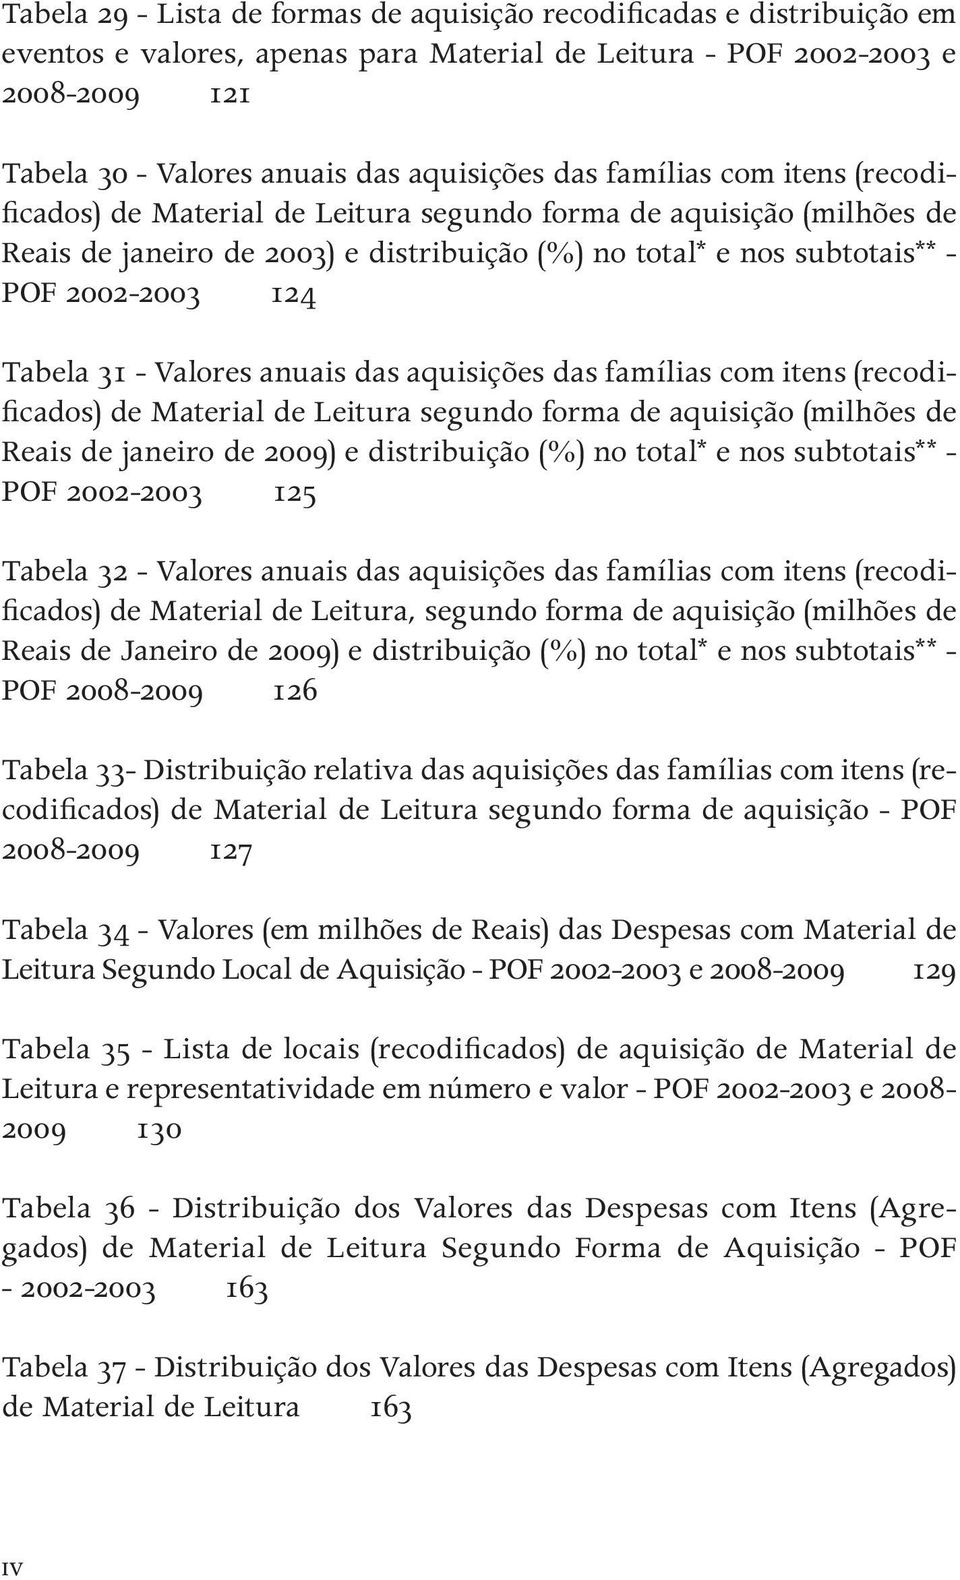 Tabela 31 - Valores anuais das aquisições das famílias com itens (recodificados) de Material de Leitura segundo forma de aquisição (milhões de Reais de janeiro de 2009) e distribuição (%) no total* e